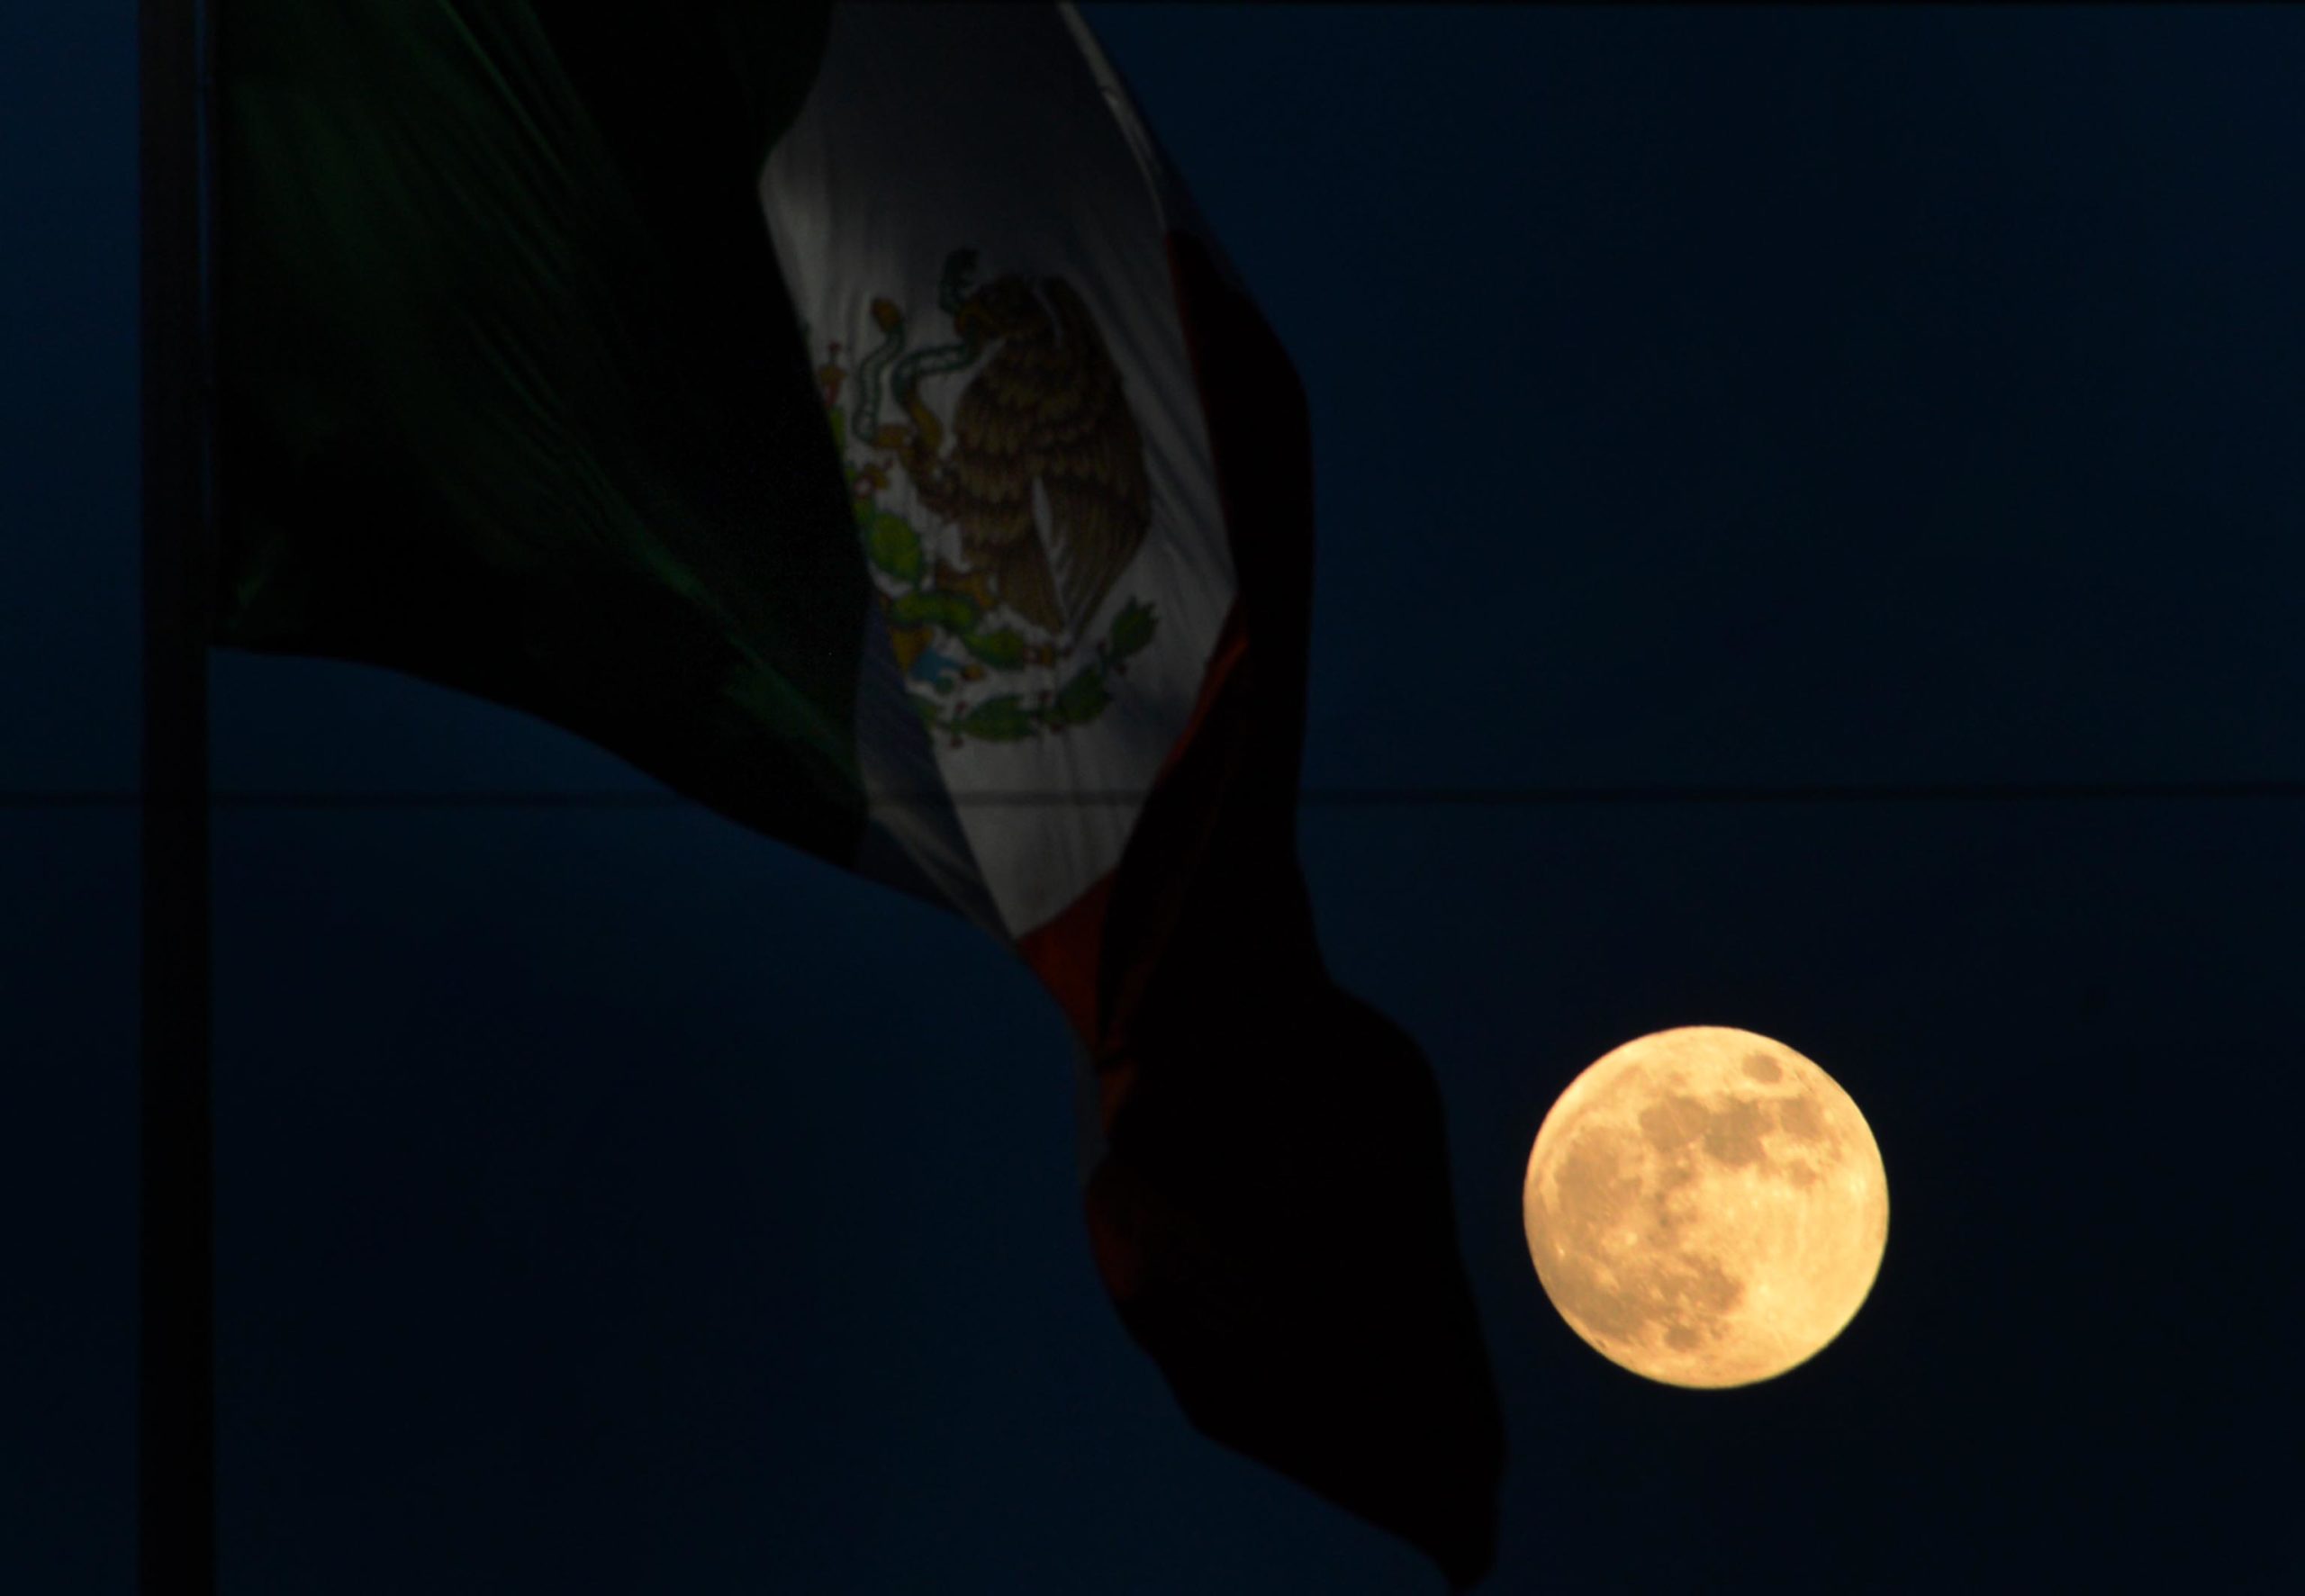 Investigador de la UNAM prevé fenómenos astronómicos en las próximas semanas, como dos lunas llenas